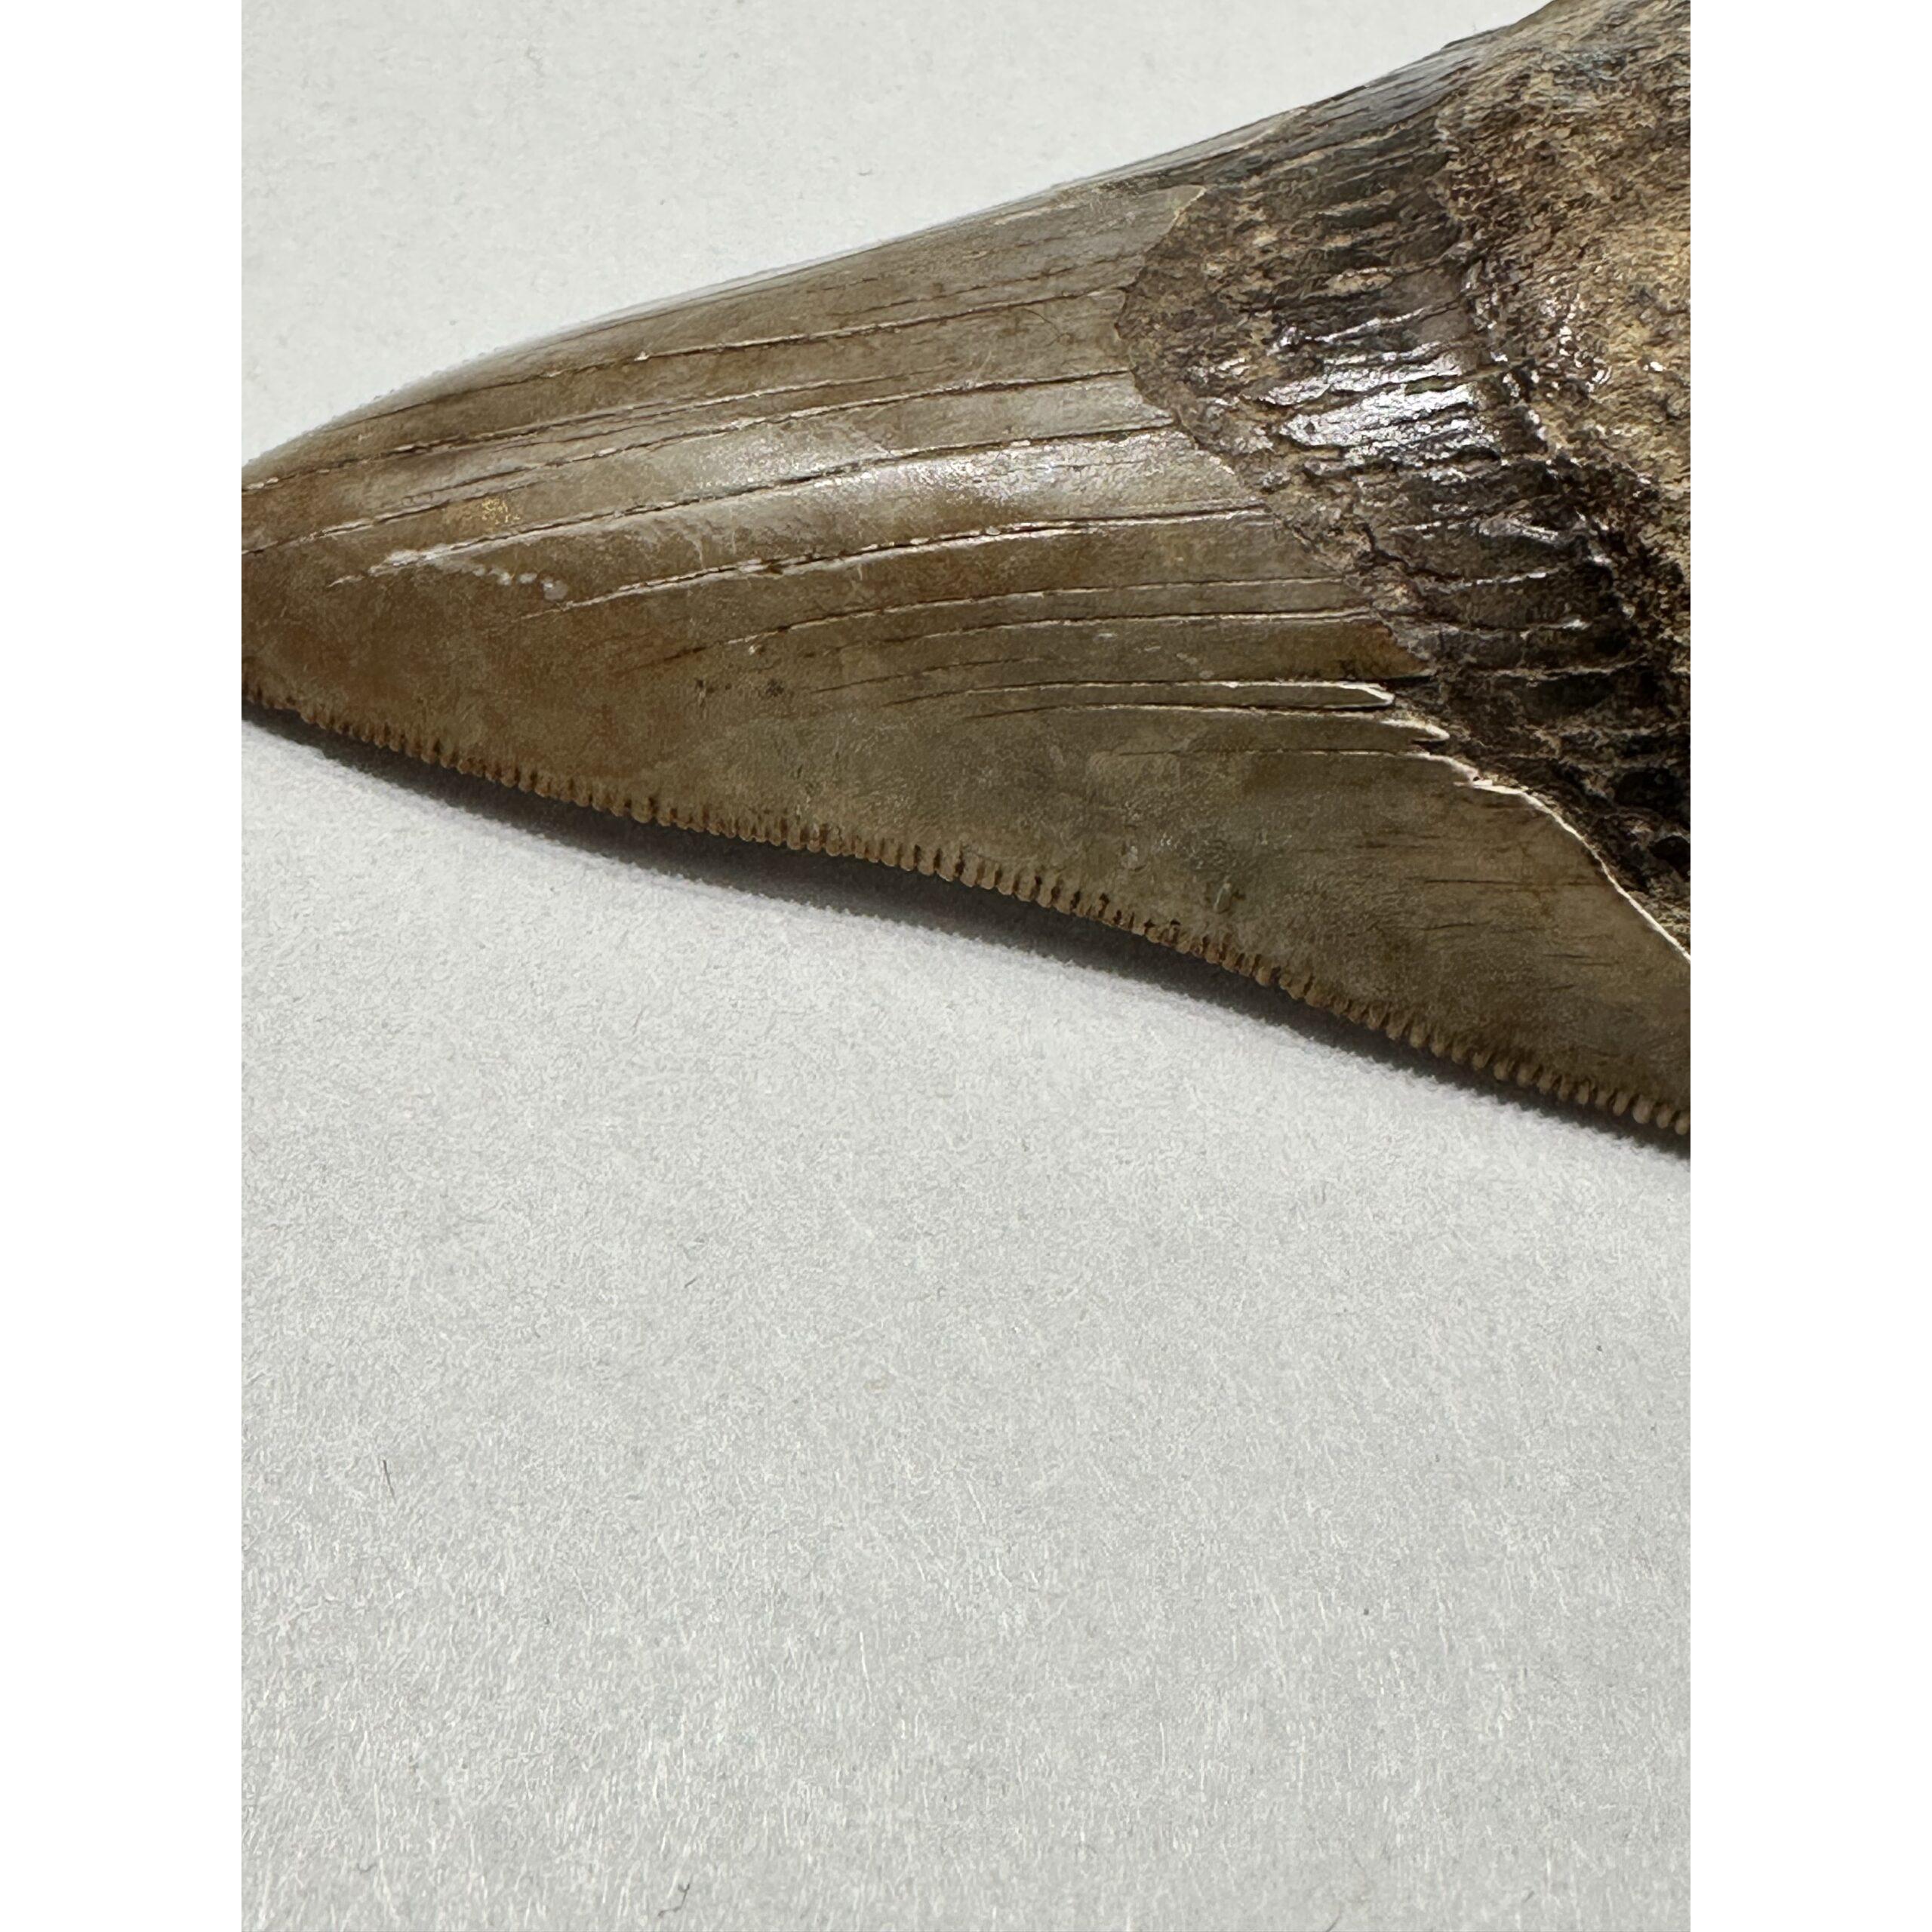 Megalodon Shark Tooth, S. Georgia 3.75″ Prehistoric Online